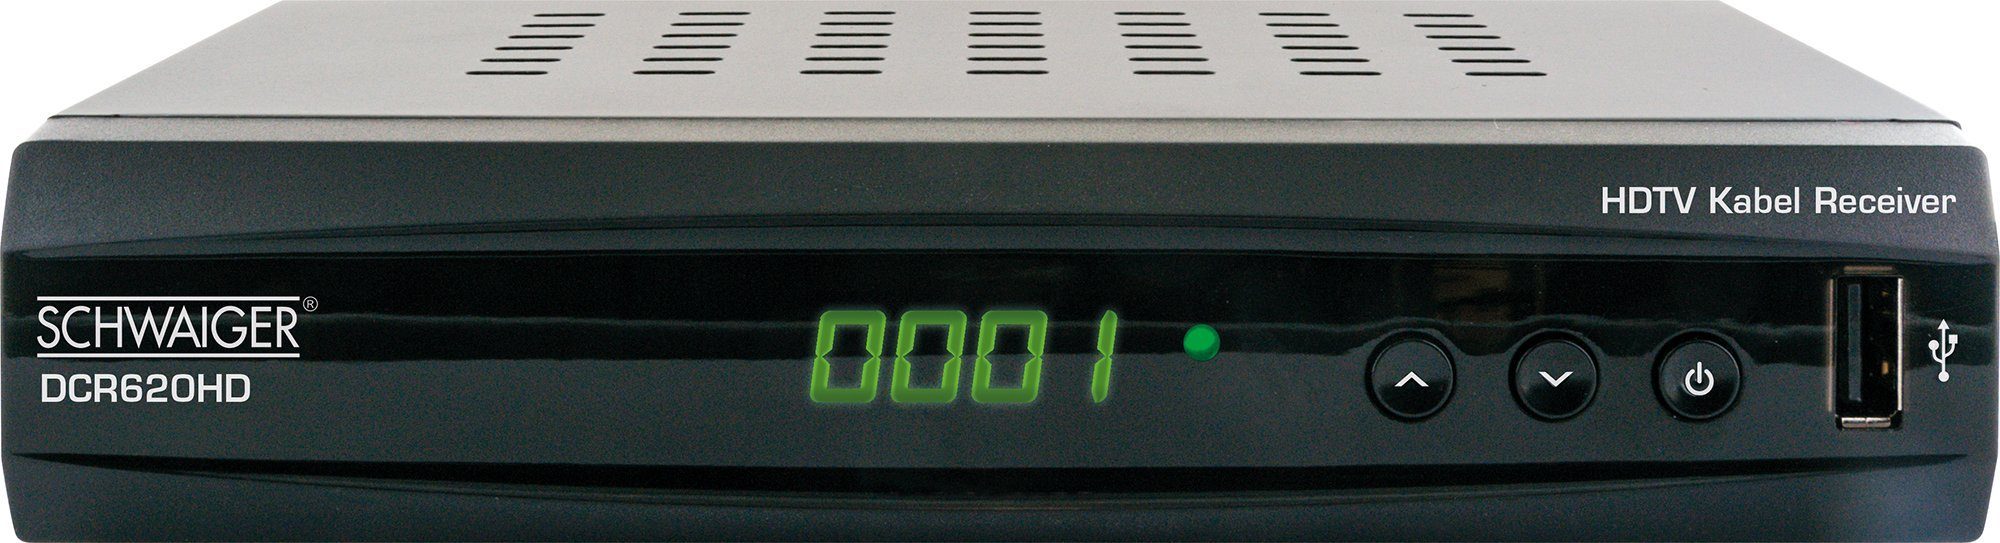 (Eingebauter Mediaplayer) Kabel-Receiver DCR620HD Schwaiger